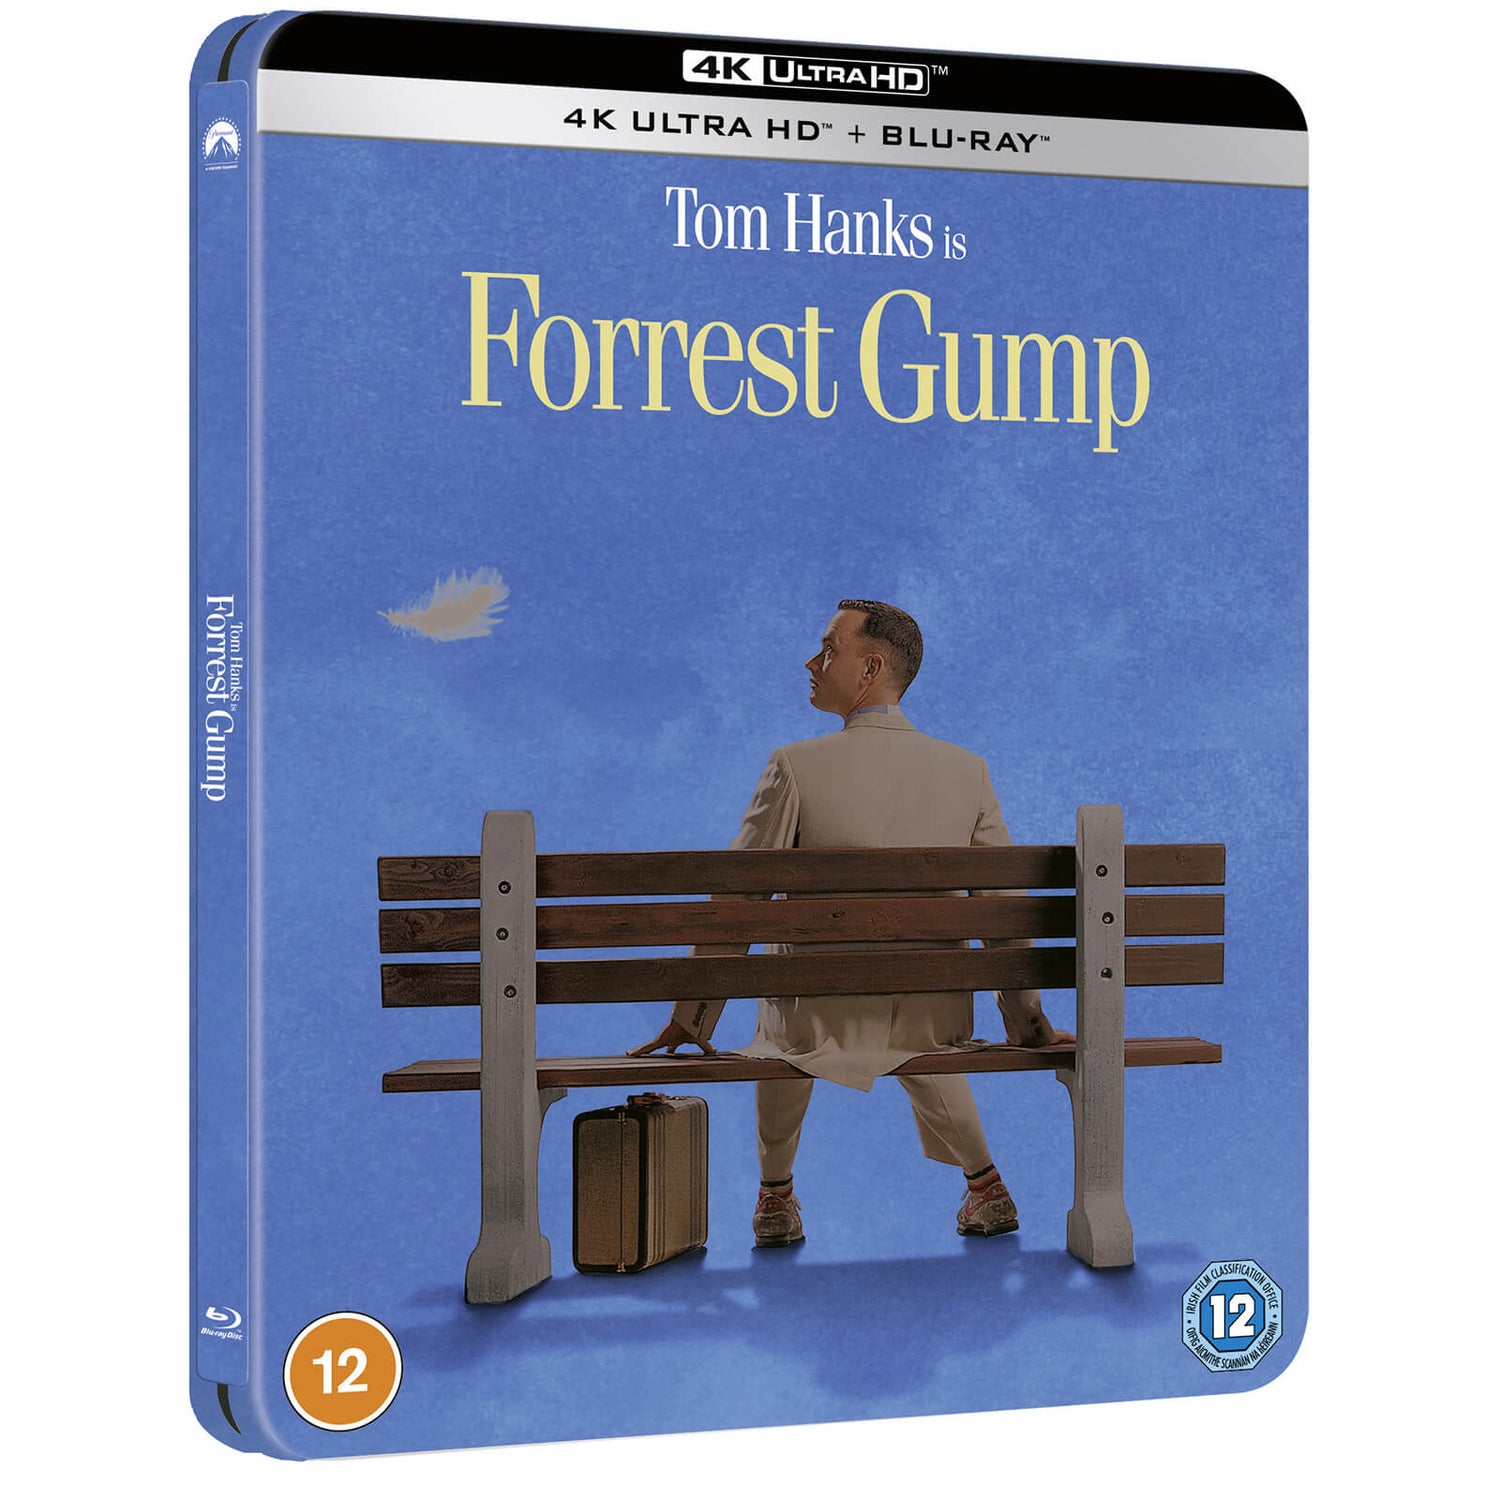 Forrest Gump - Steelbook 4K Ultra HD en Exclusivité Zavvi (Blu-ray inclus)